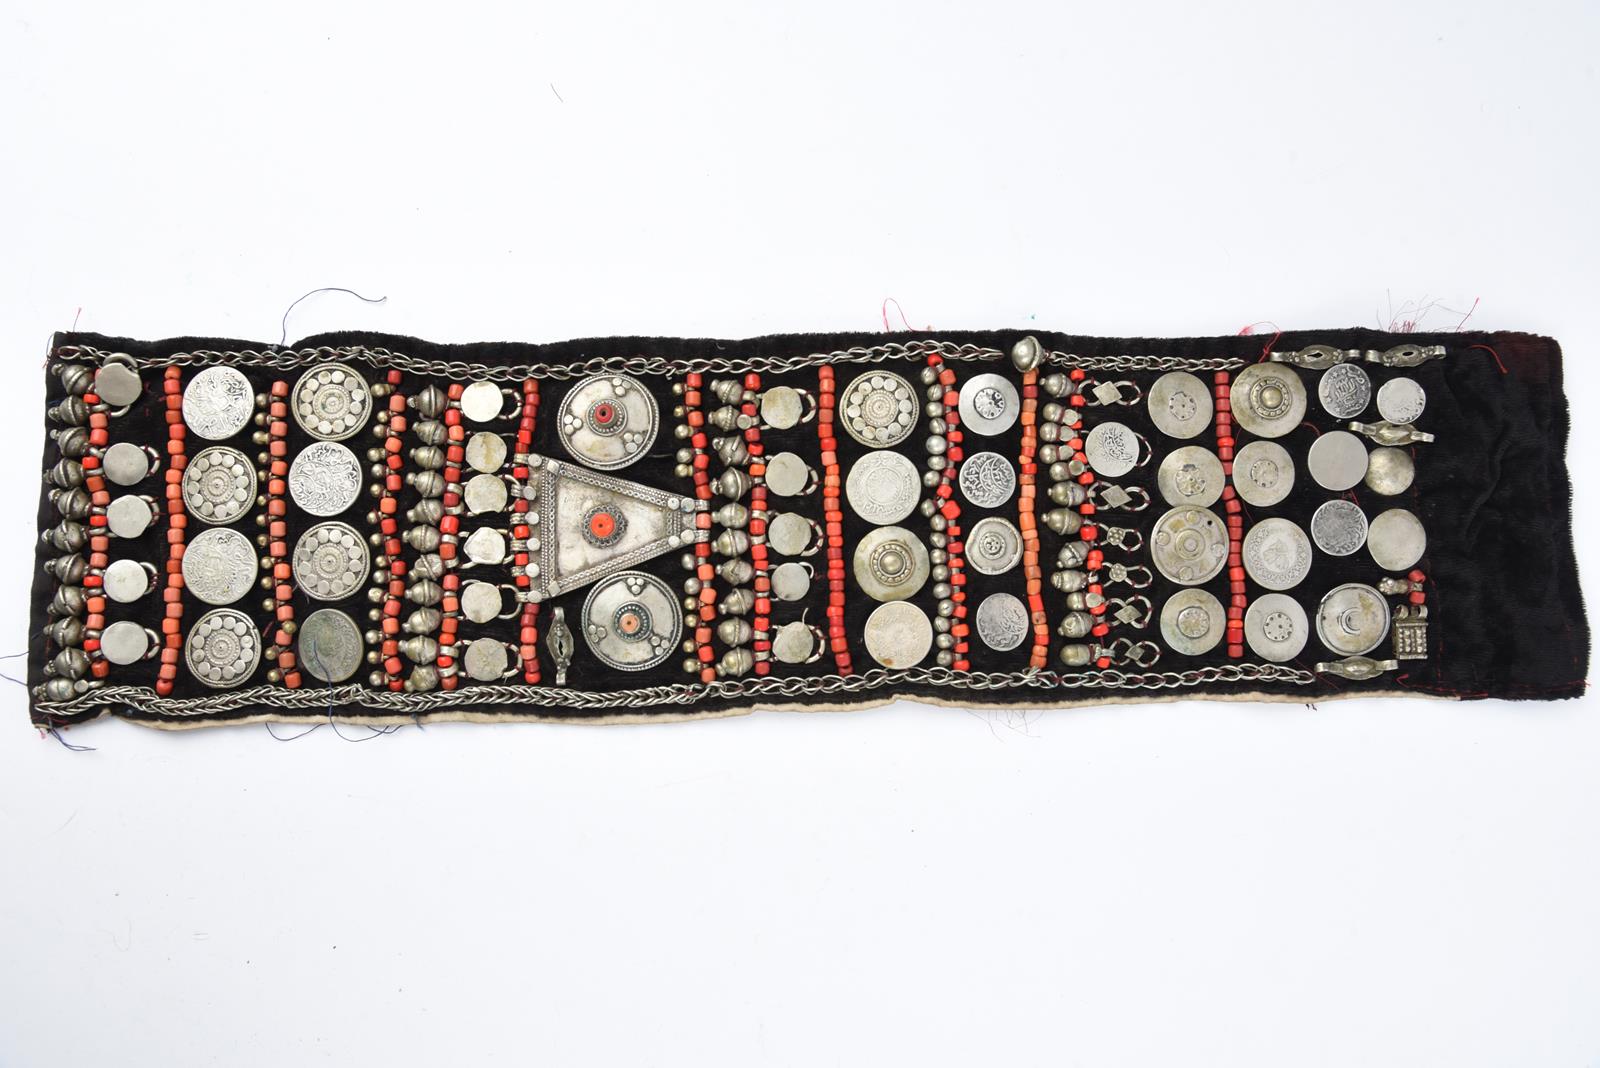 λA Bedouin amulet chest ornament cloth with numerous sewn on amulets and beads, 62cm long, and three - Bild 16 aus 27